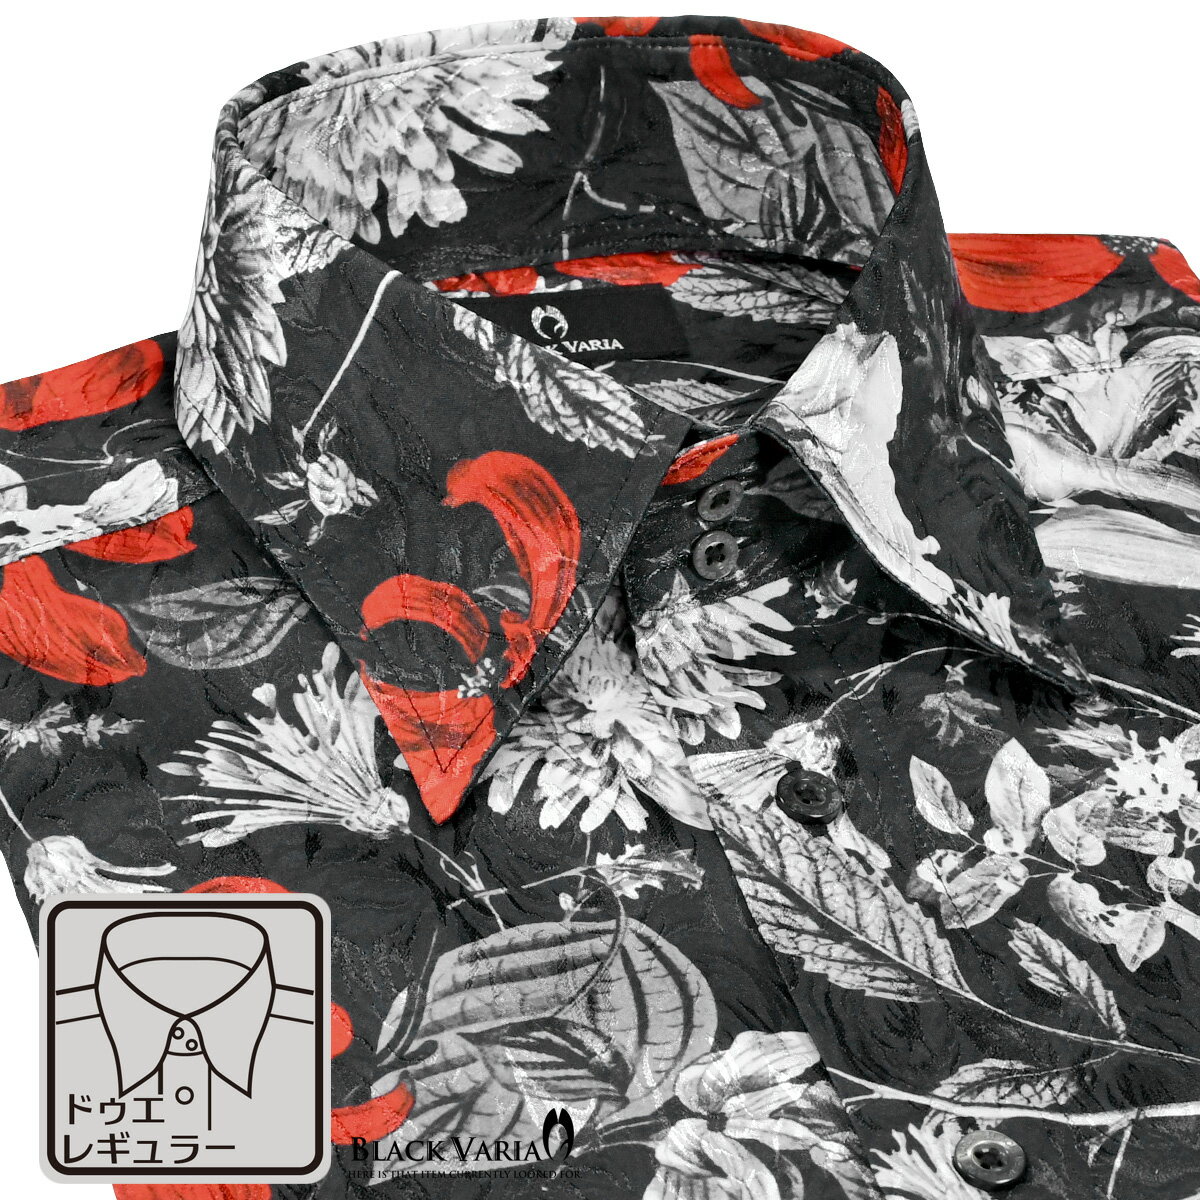 ドゥエボットーニ サテンシャツ ドゥエボットーニ 花柄 ドレスシャツ レギュラーカラー ジャガード パーティー メンズ mens ファッション(ブラック黒レッド赤) 221251